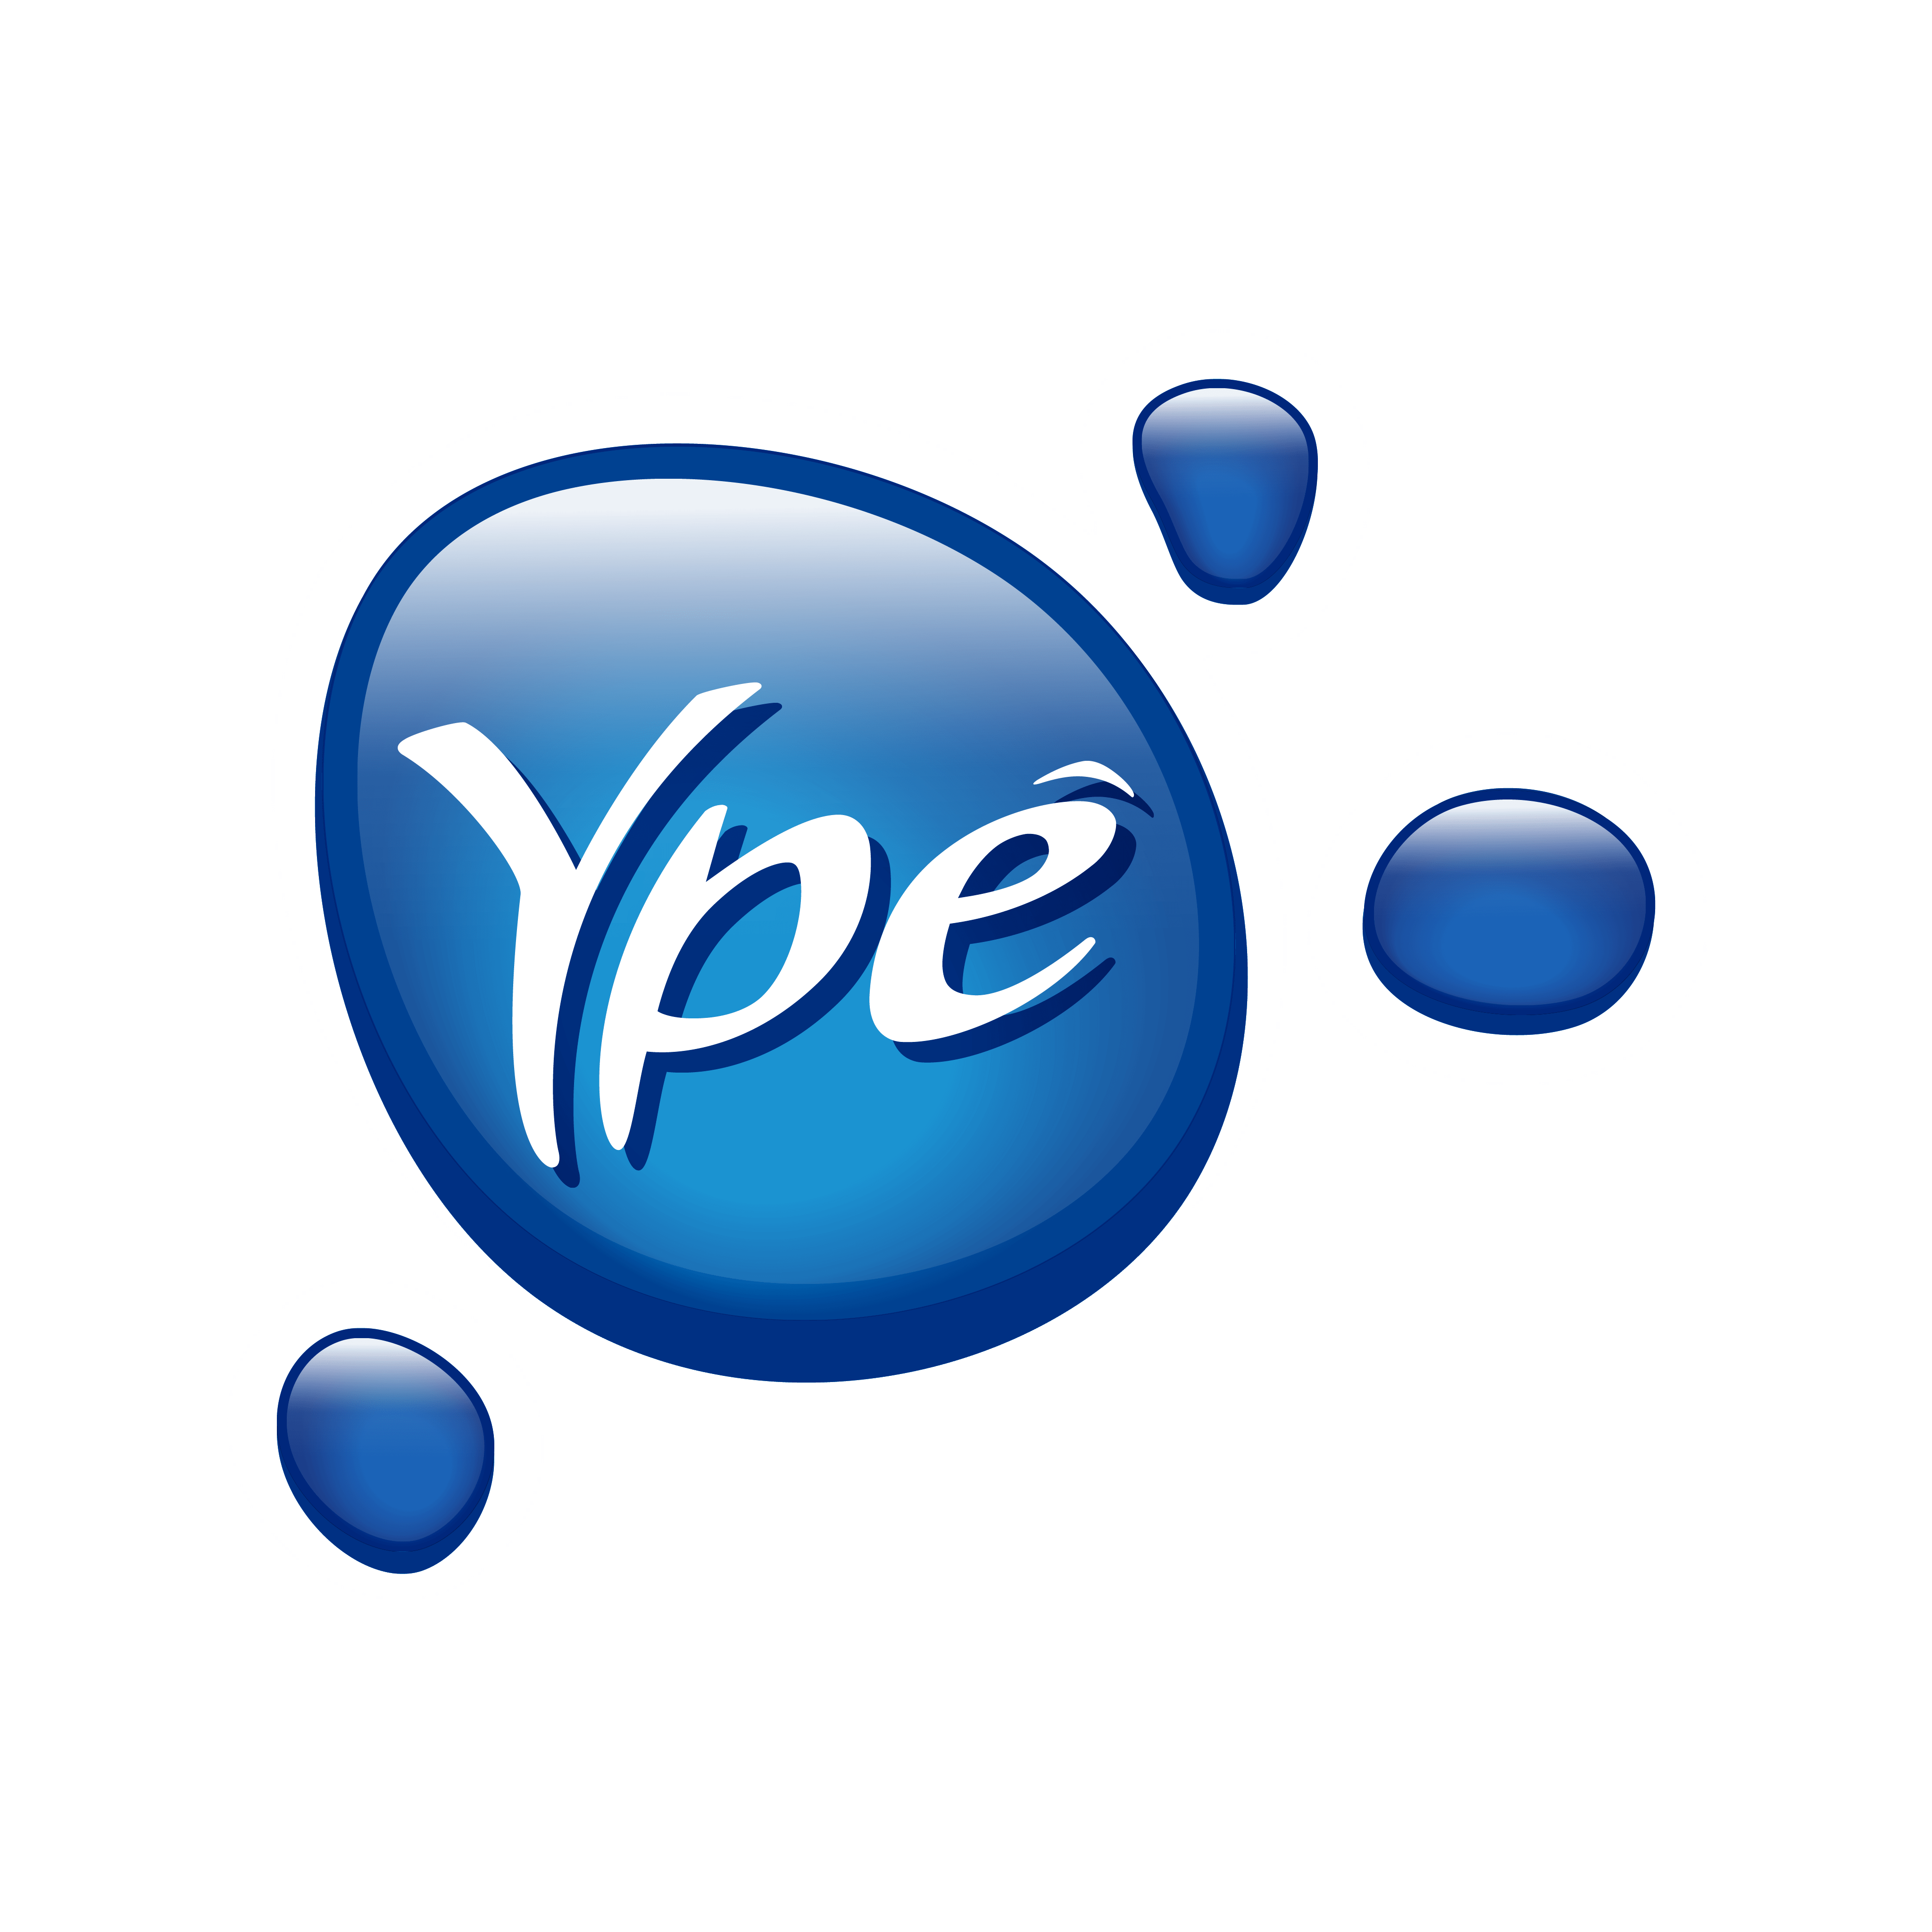 logo-ype-4096.png?profile=RESIZE_400x